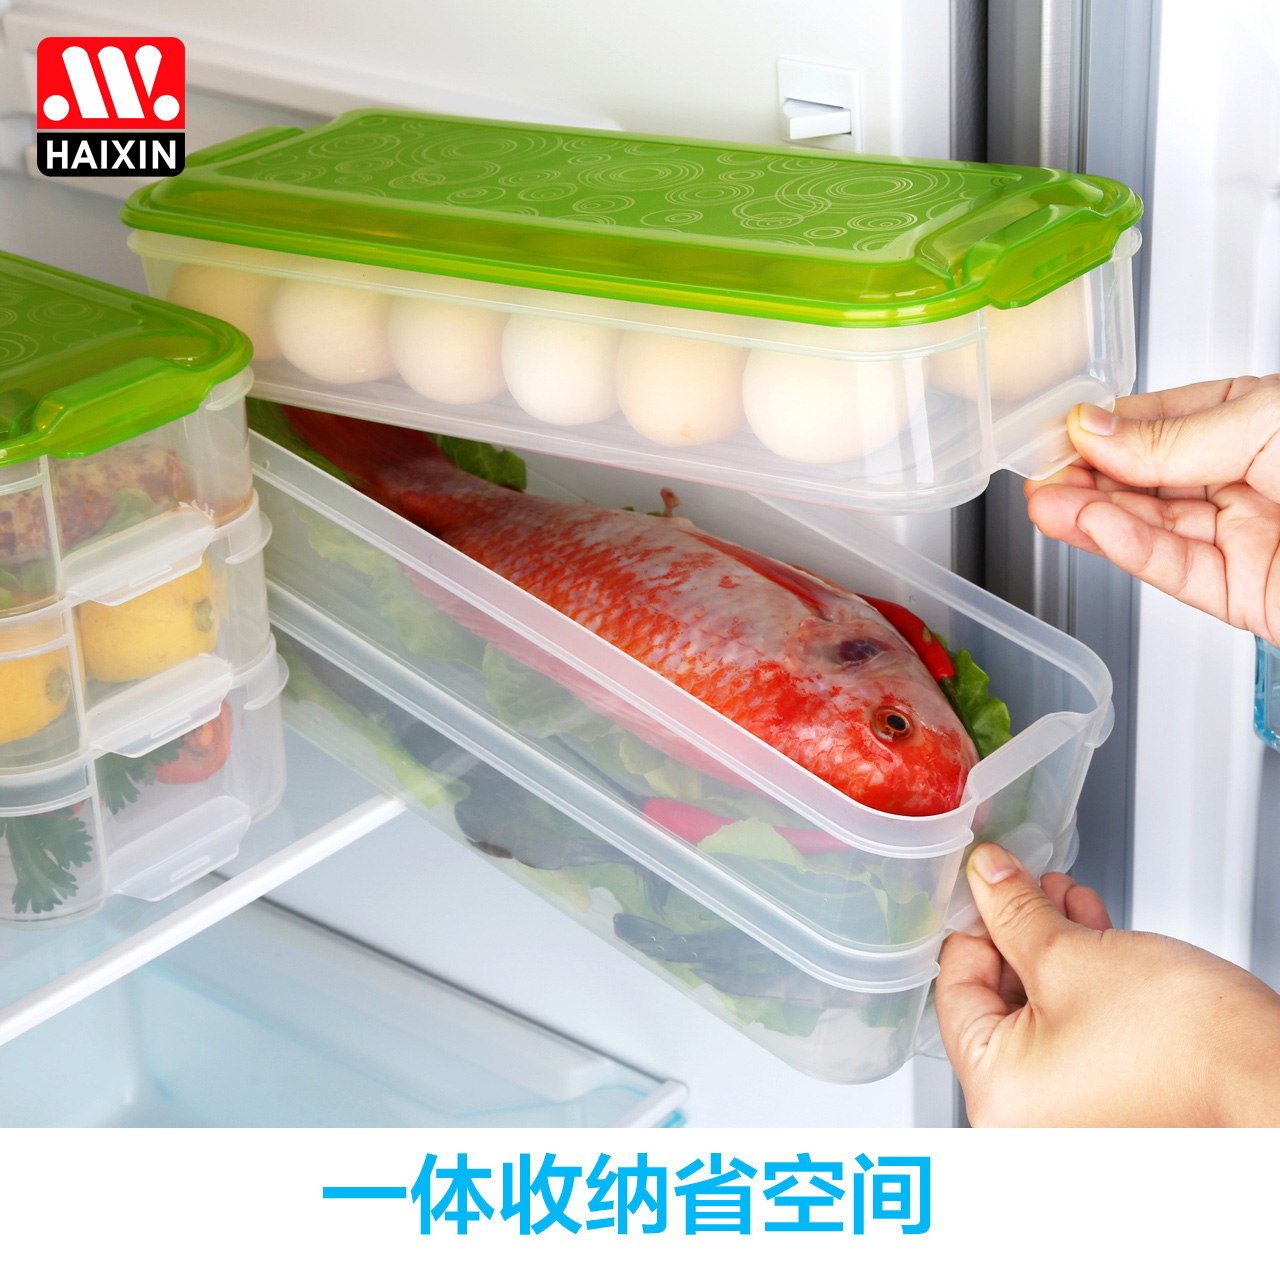 海兴鸡蛋盒冰箱收纳盒冷冻食物保鲜盒长方形饺子盒保鲜收纳面条盒产品展示图1